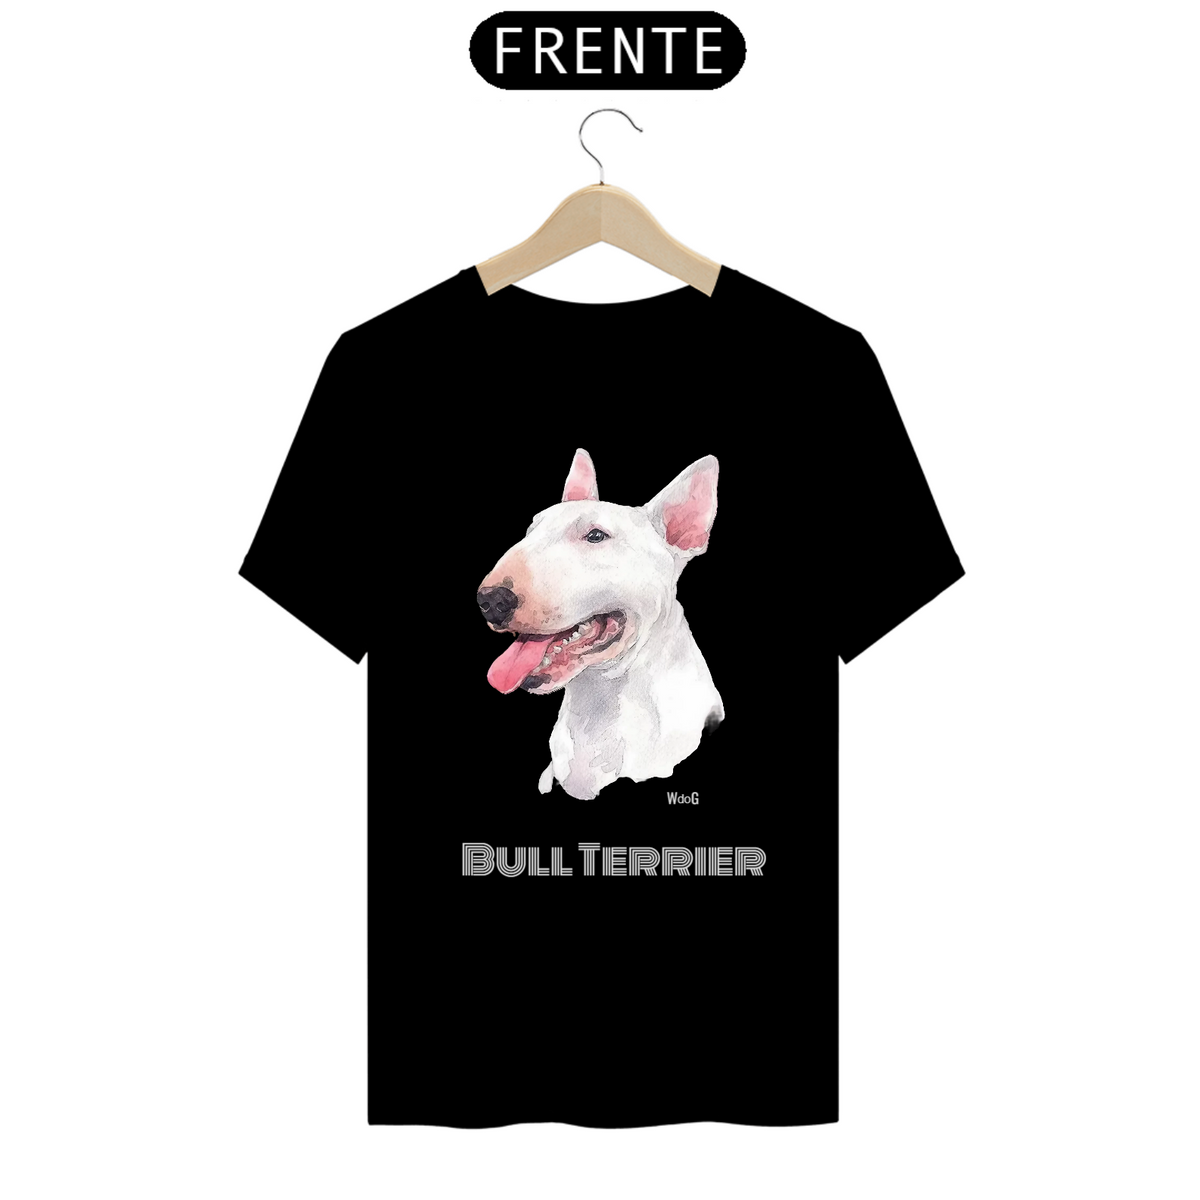 Nome do produto: Camiseta Bull Terrier / T-shirt Bull Terrier